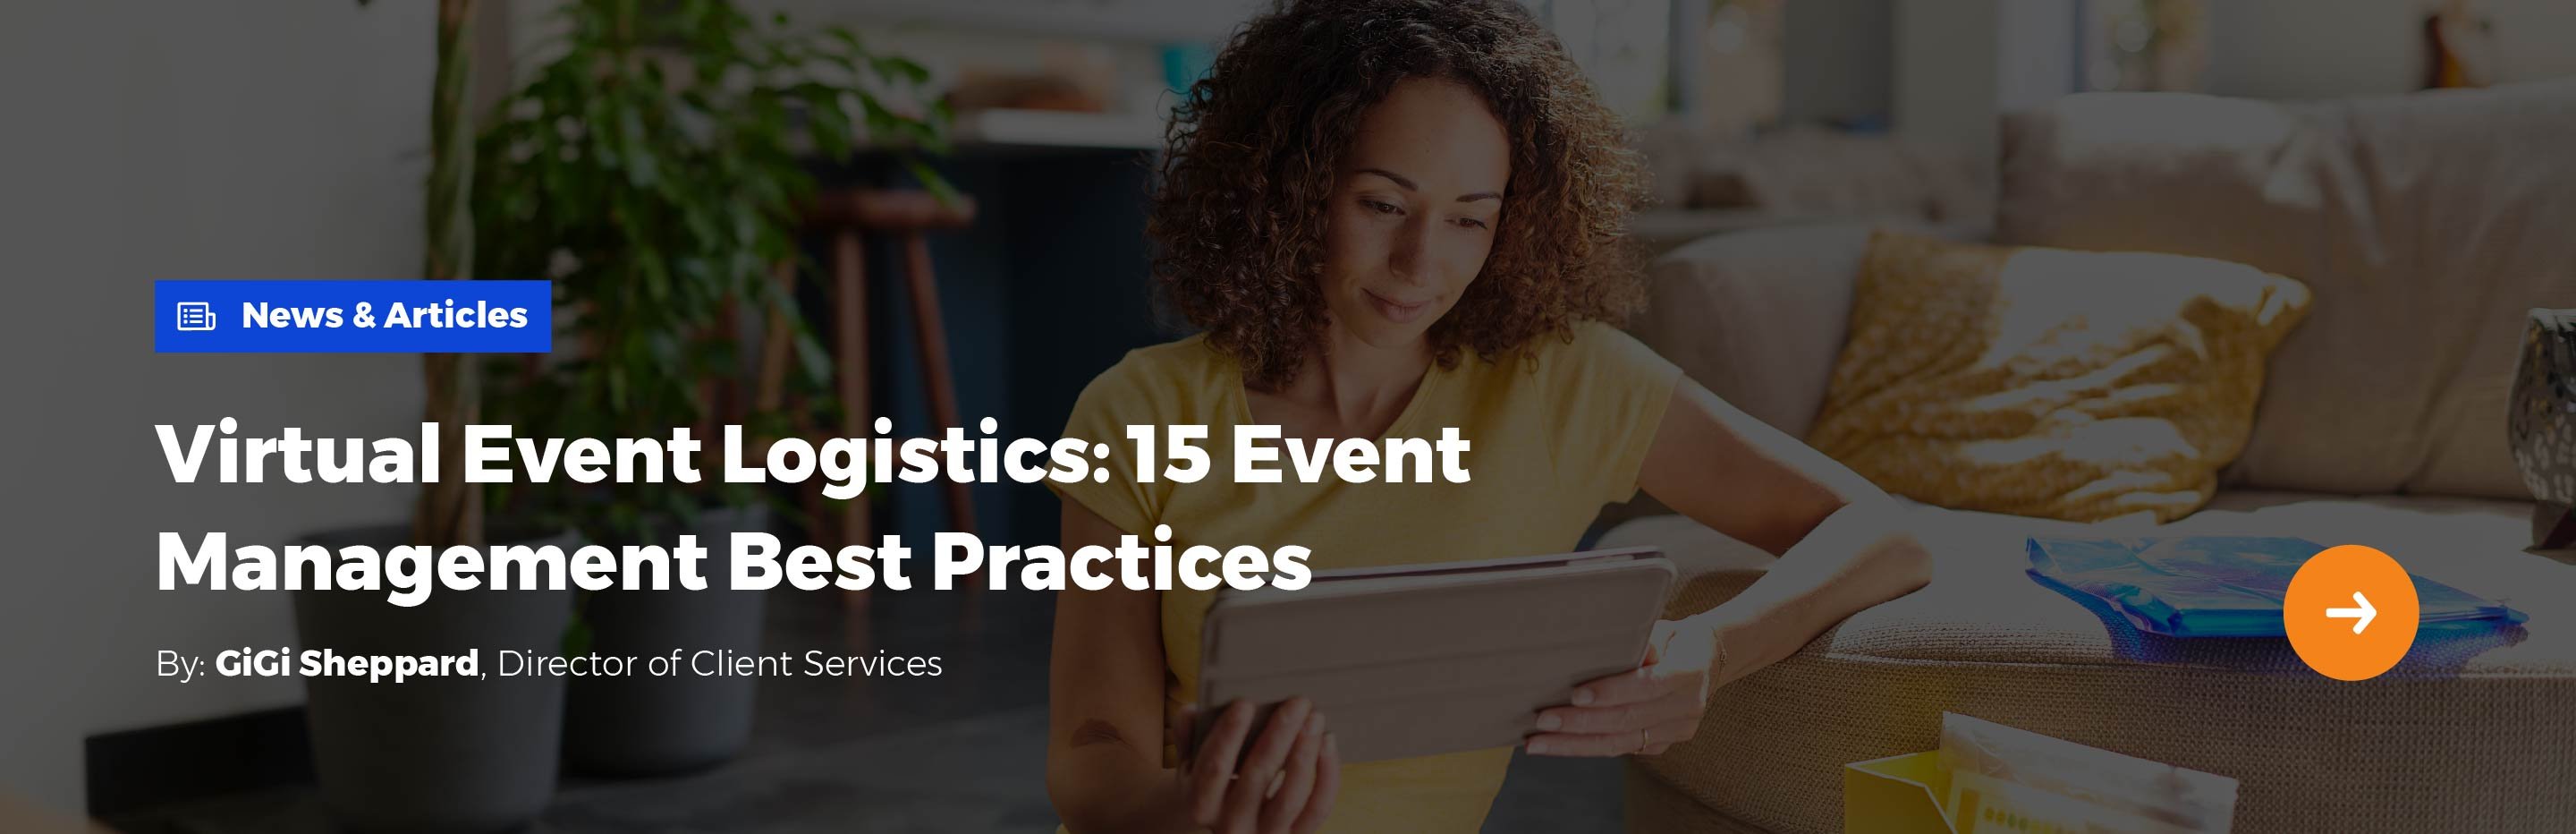 News & Articles: Virtual Event Logistics: 15 Event Management Best Practices